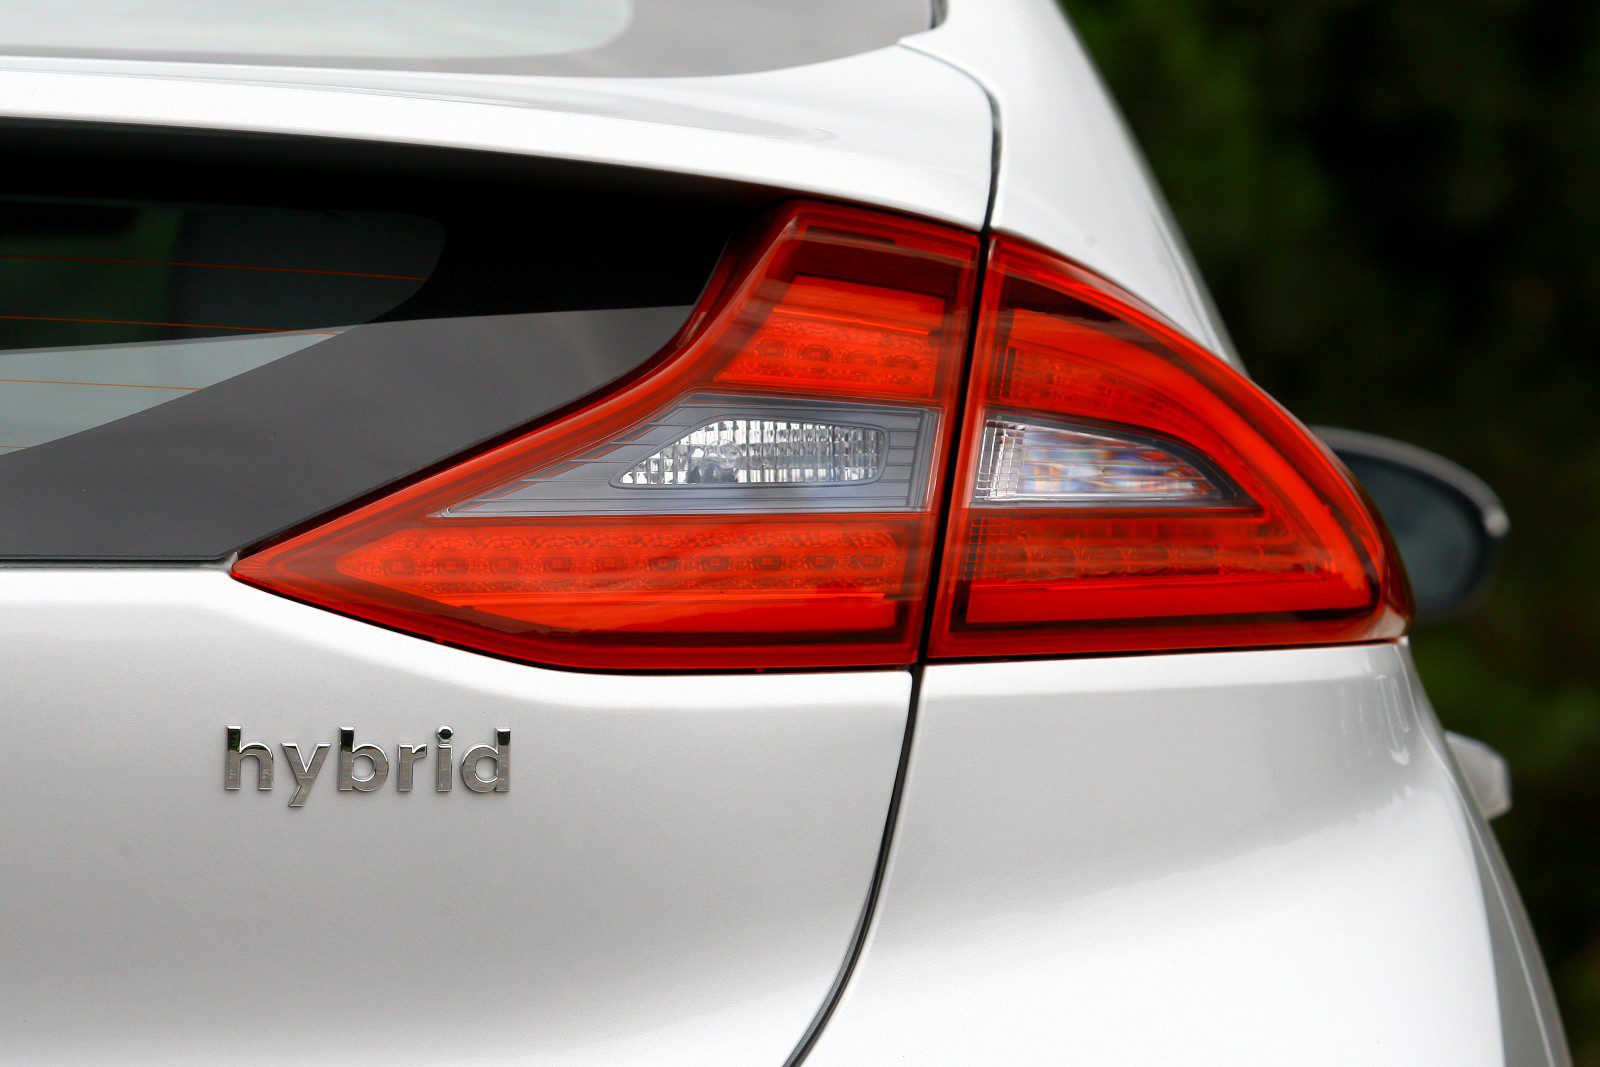 Renting de vehículos híbridos, un paso hacia la movilidad sostenible